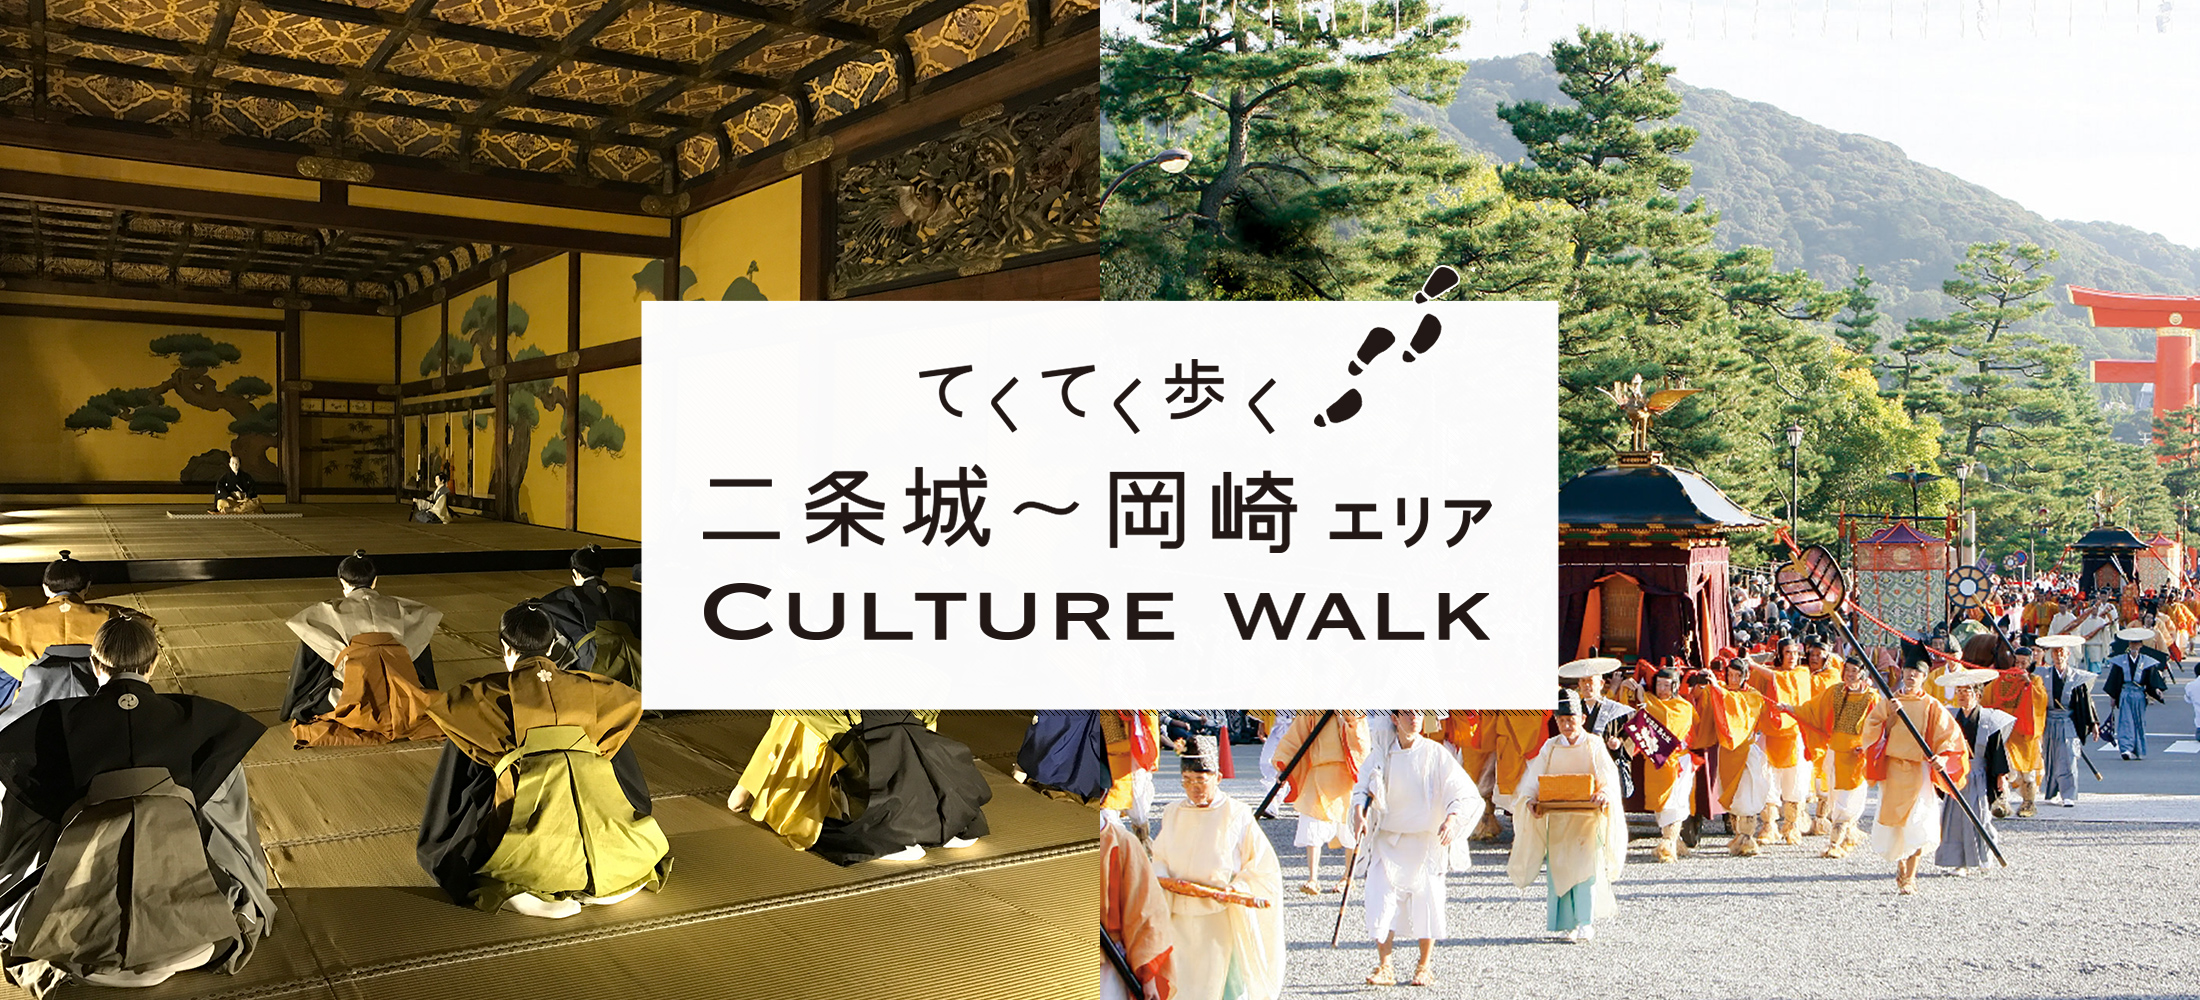 てくてく歩く 二条城 岡崎エリア Culture Walk Web Leaf